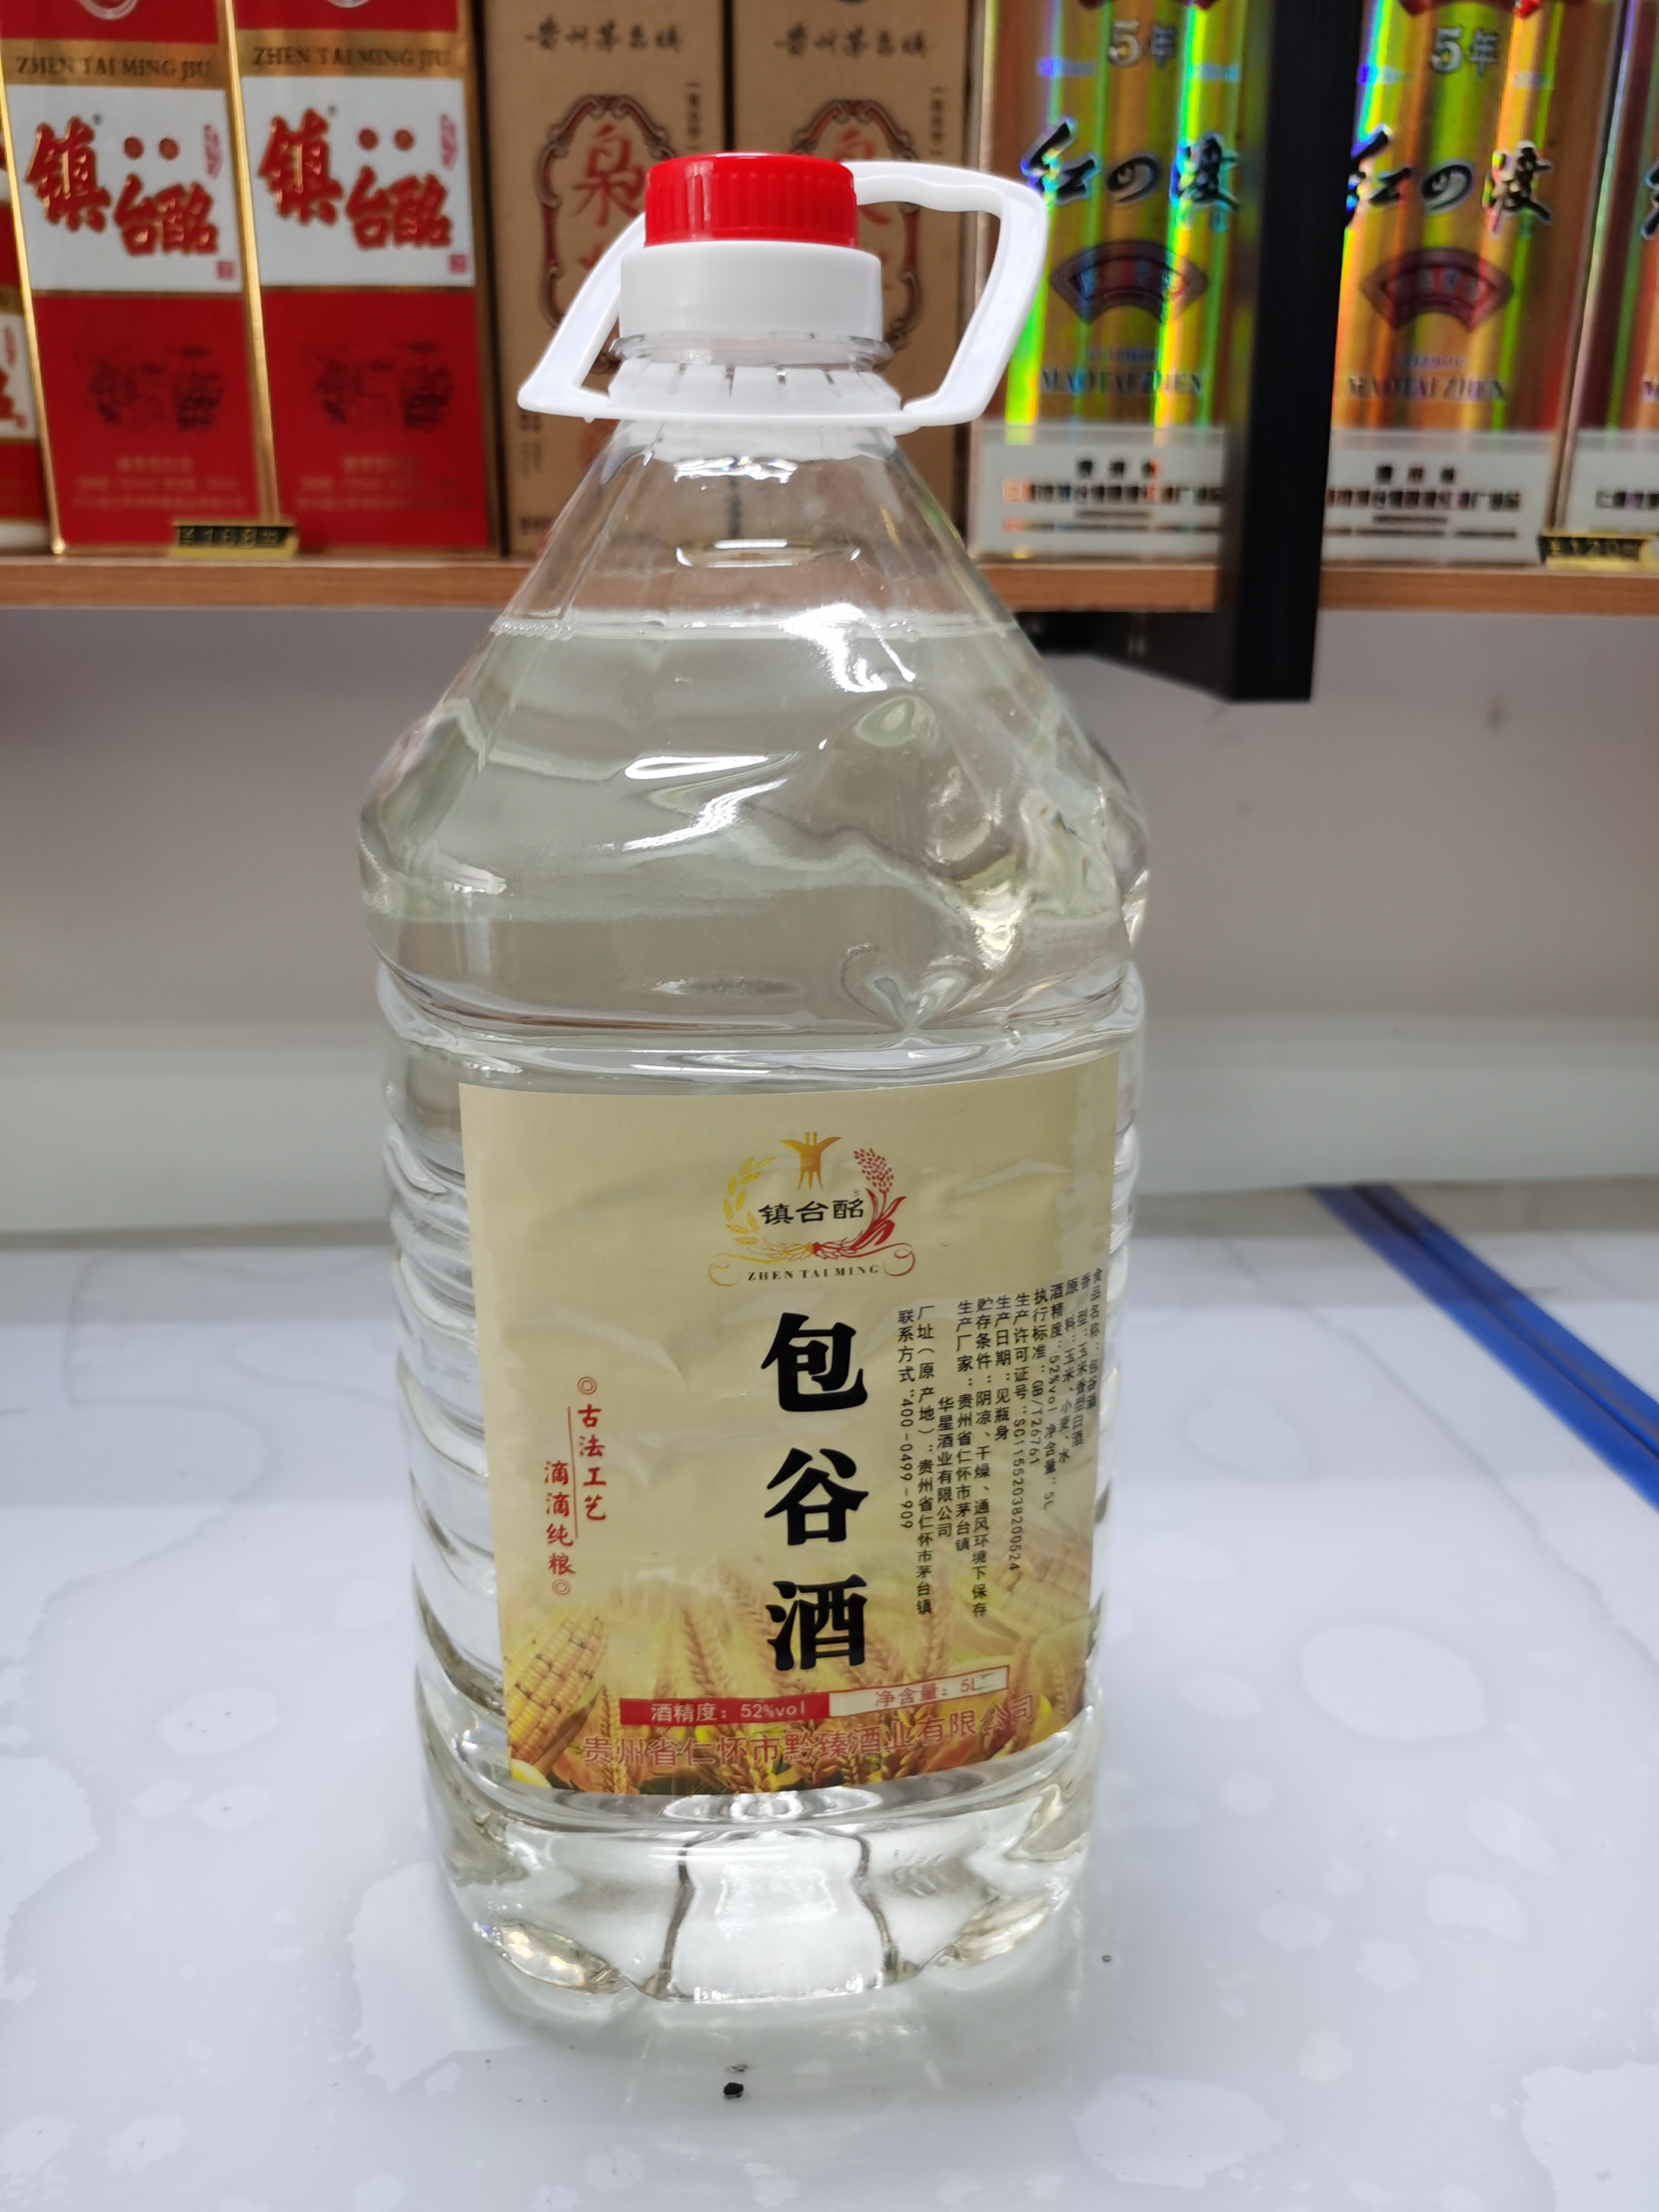 贵州特产 自家酿的包谷酒 贵州特产 自家酿的包谷酒玉米香图片